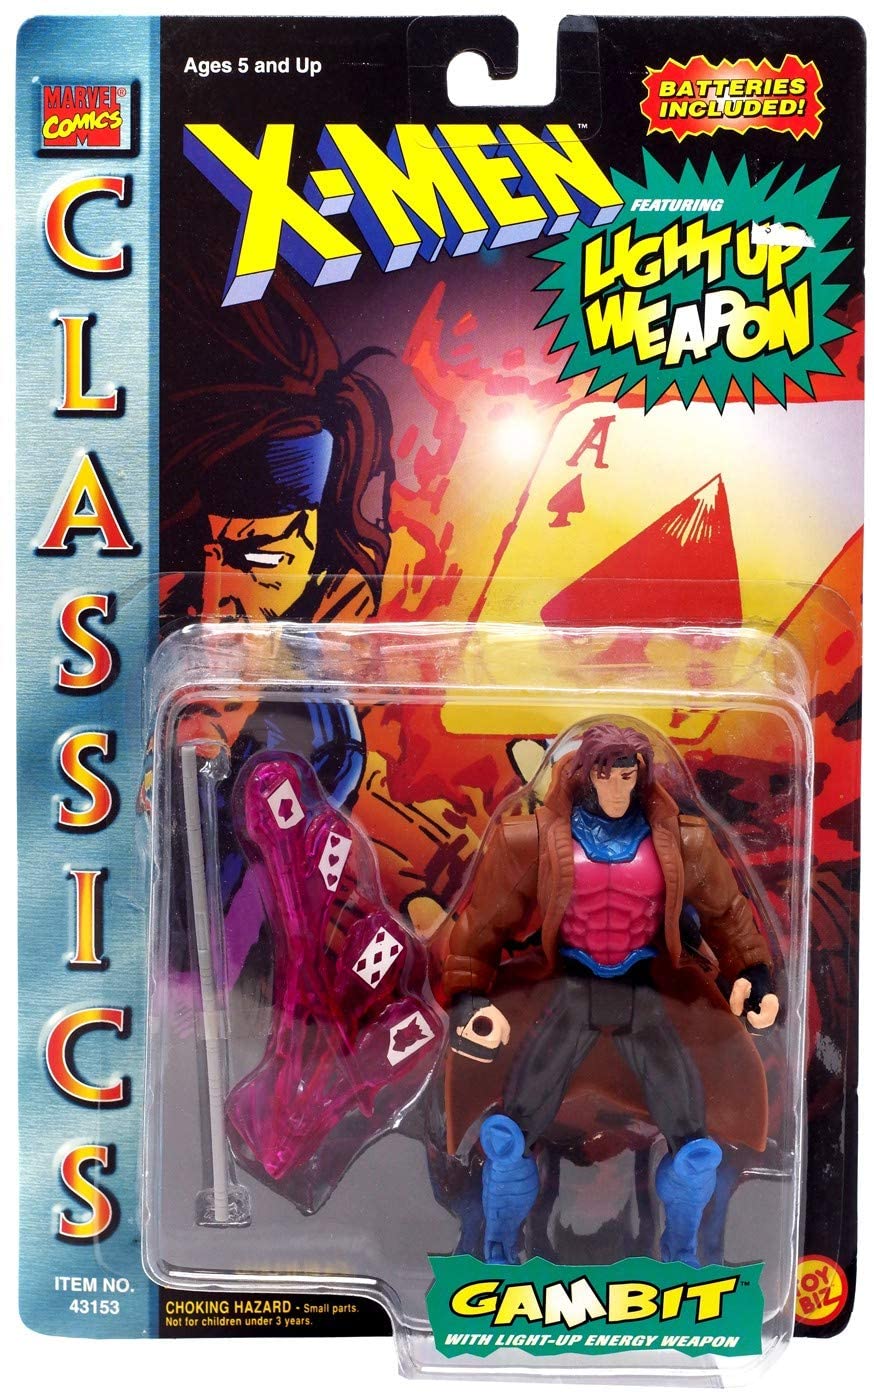 Marvel Classics X-Men "Gambit" Action Figure released by Toy Biz in 1996